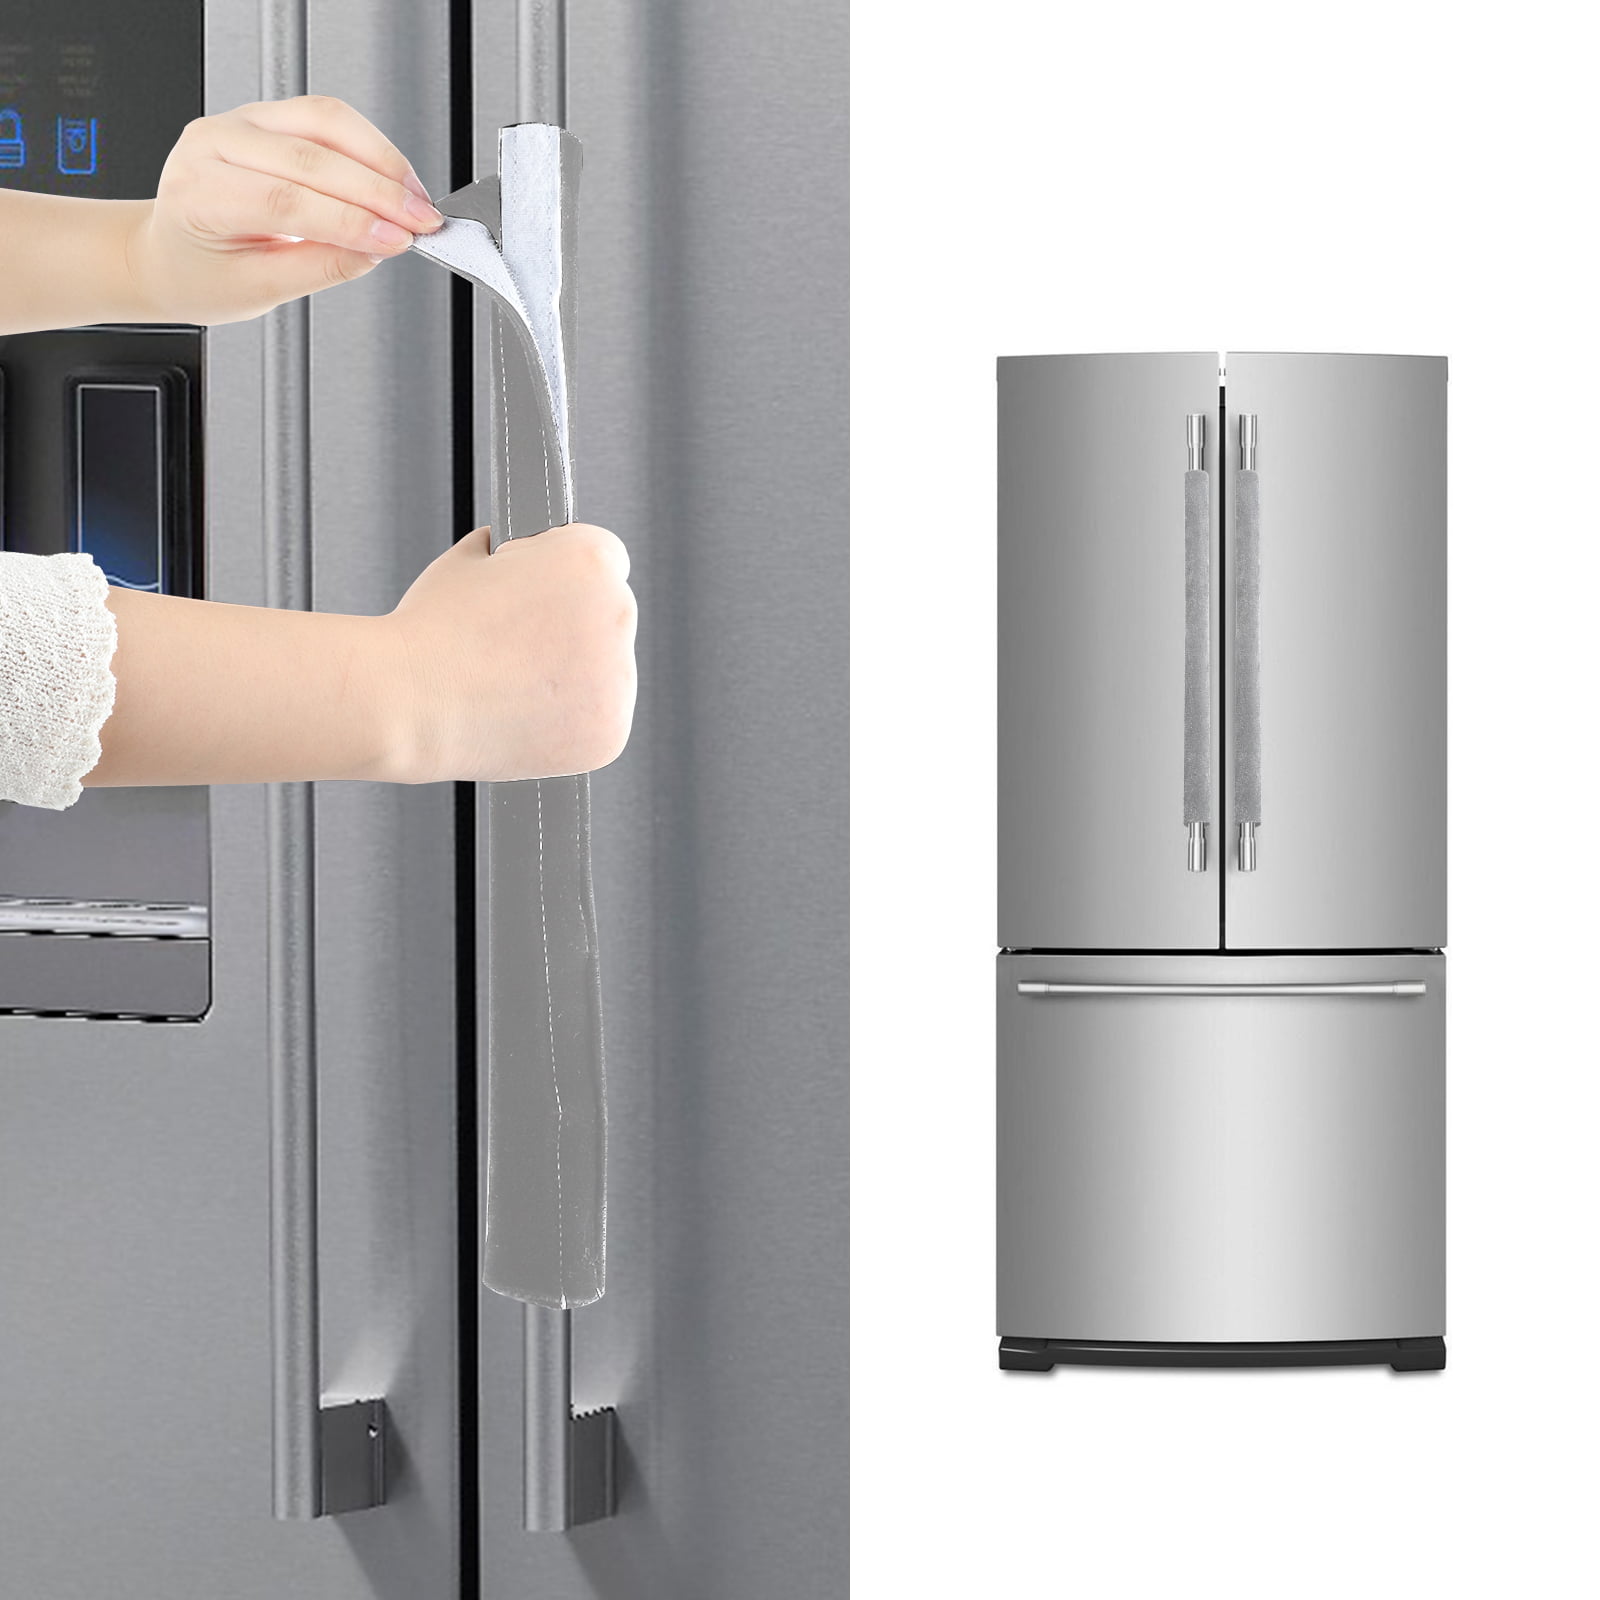 Details about   2PCS Kitchen Appliance Handle Cover Decor Smudges Door Refrigerator Fridge Oven